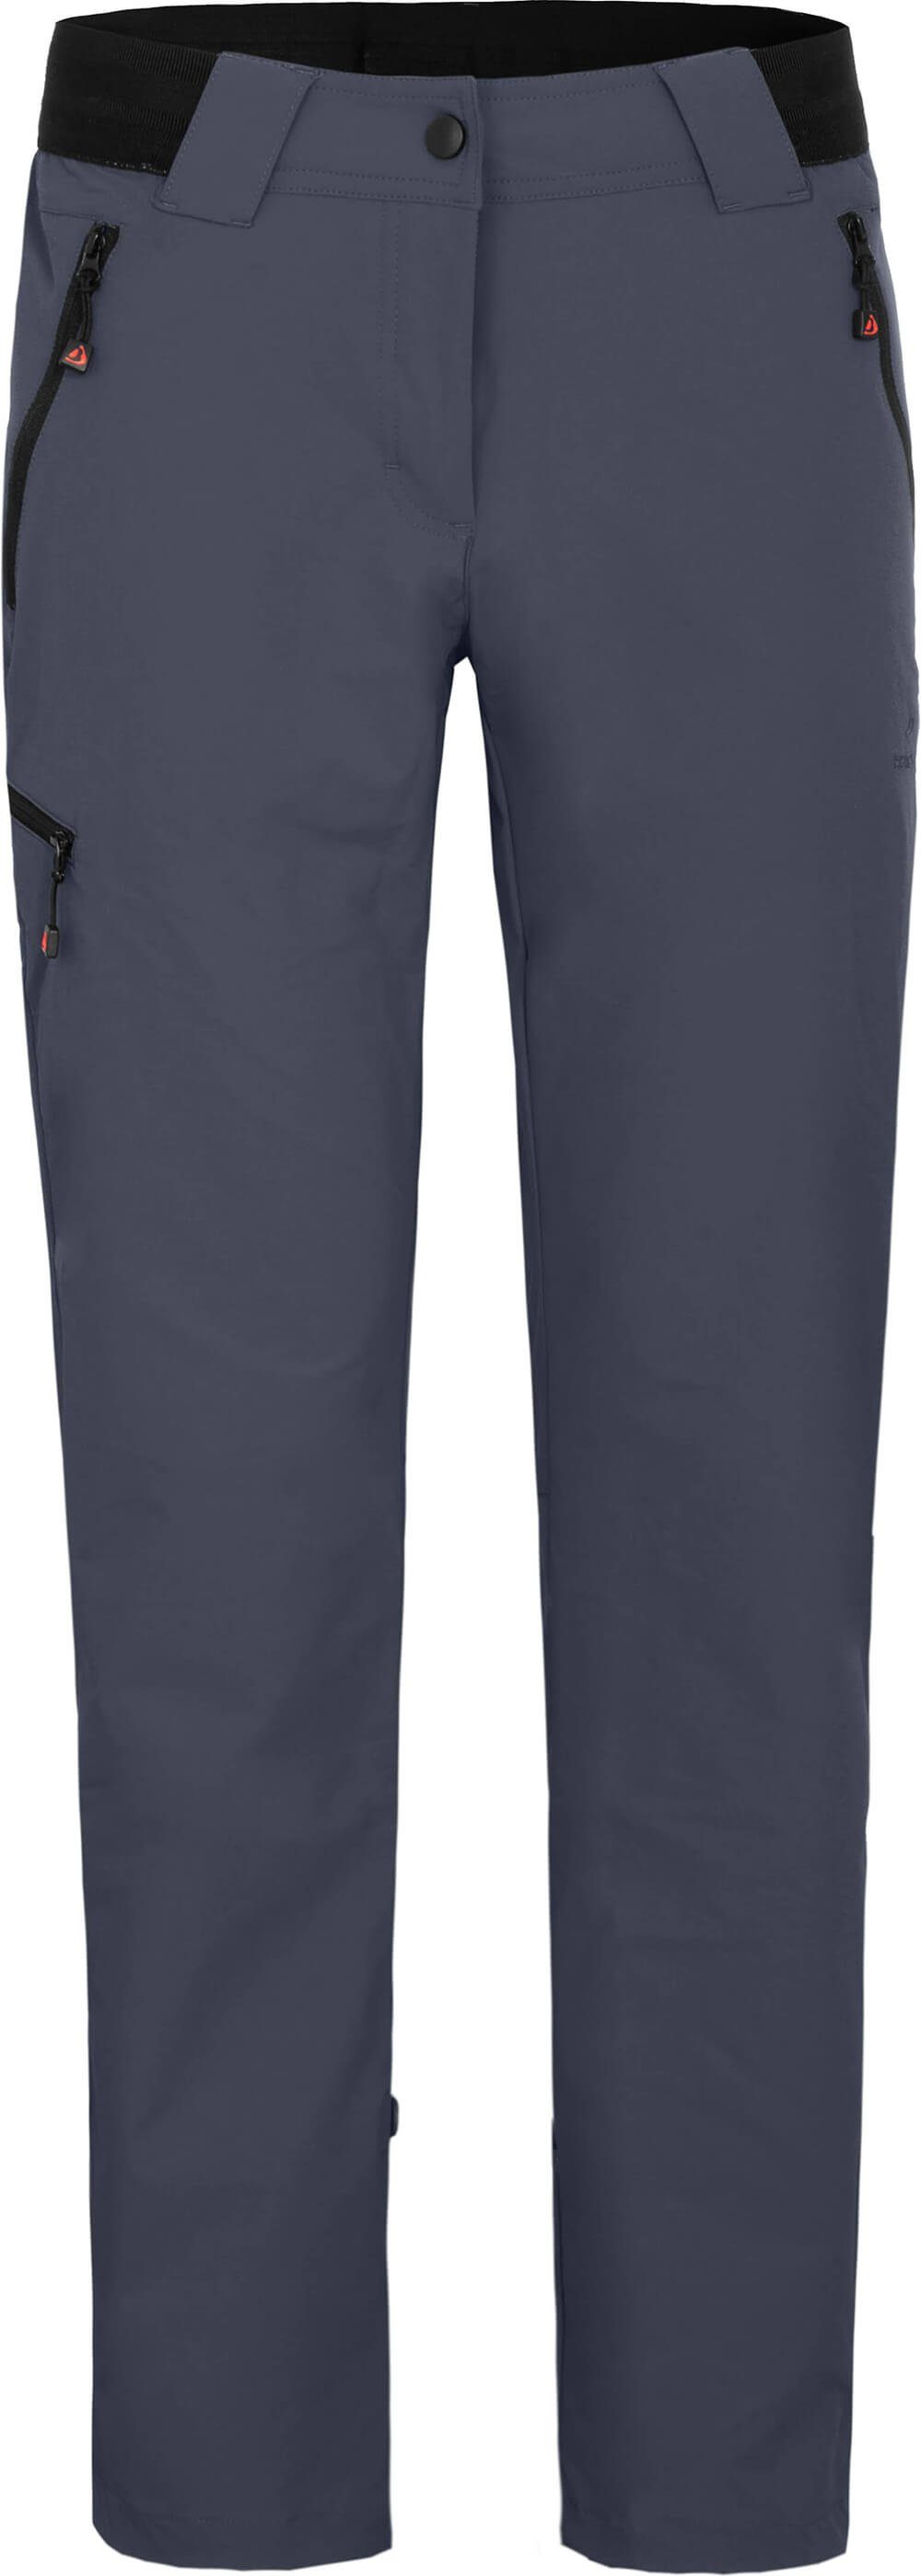 Bergson Outdoorhose leicht, Wanderhose, COMFORT Kurzgrößen, grau/blau strapazierfähig, VIDAA Damen